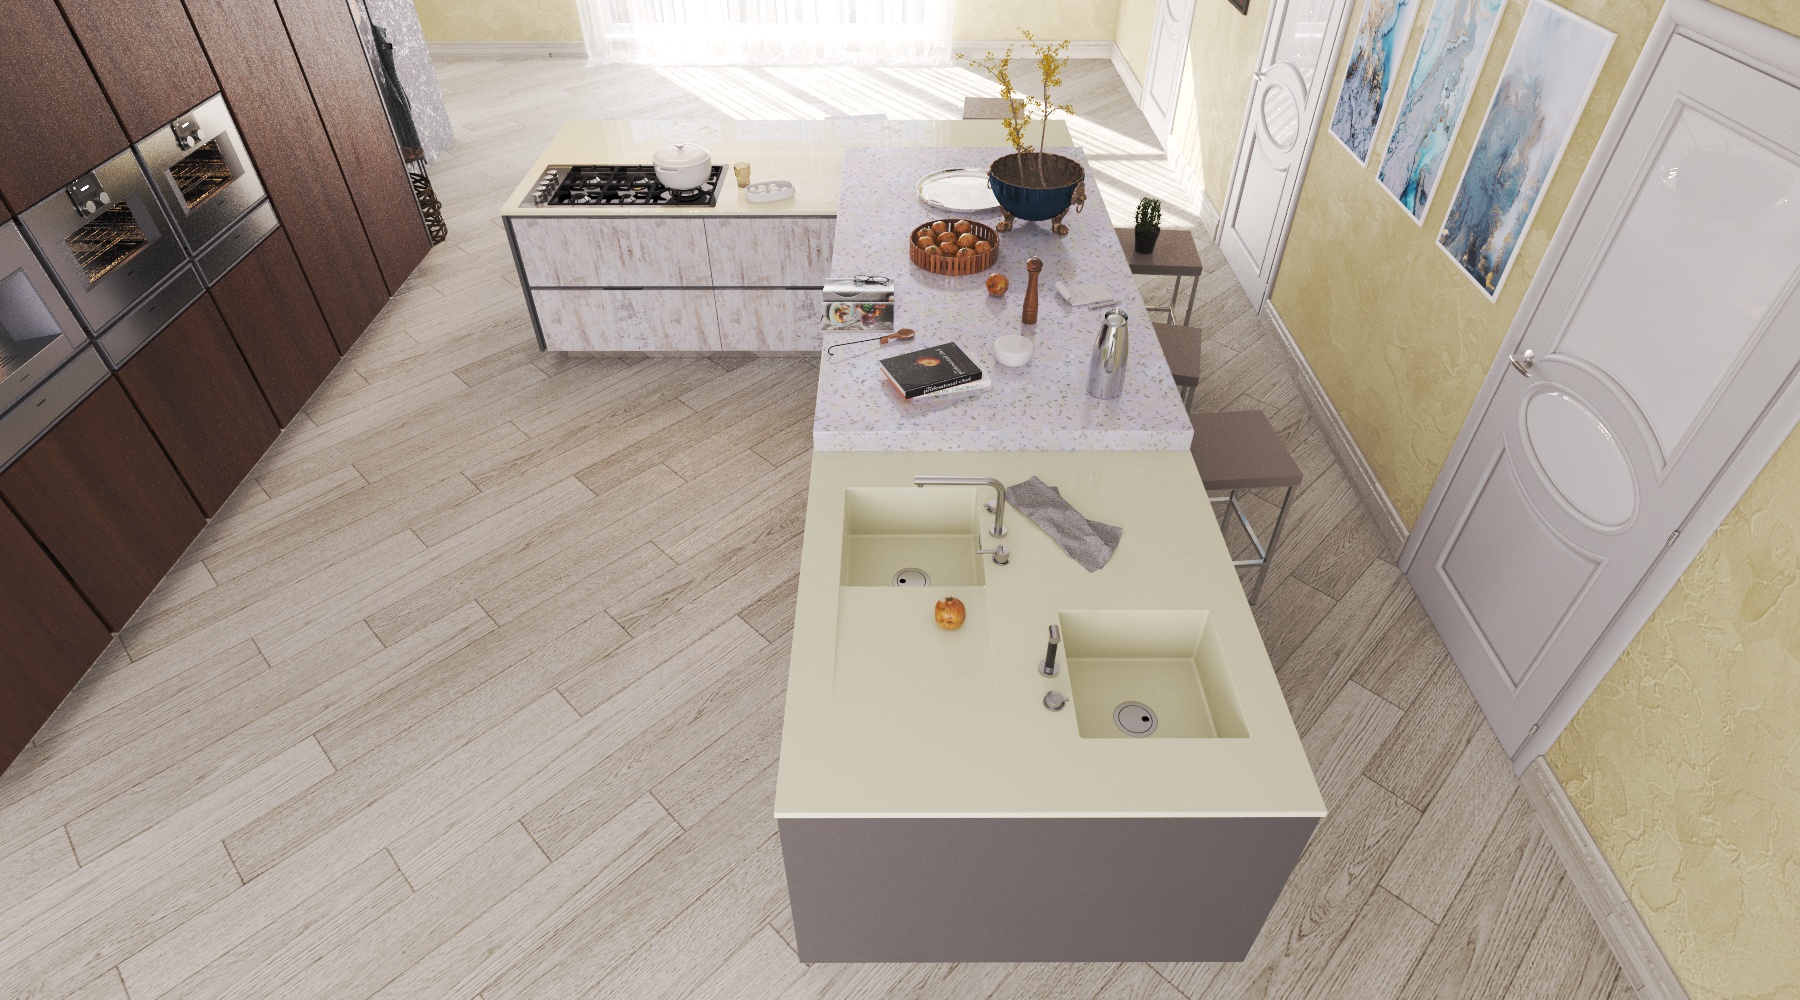 Moderne Küche in 3d max vray 3.0 Bild